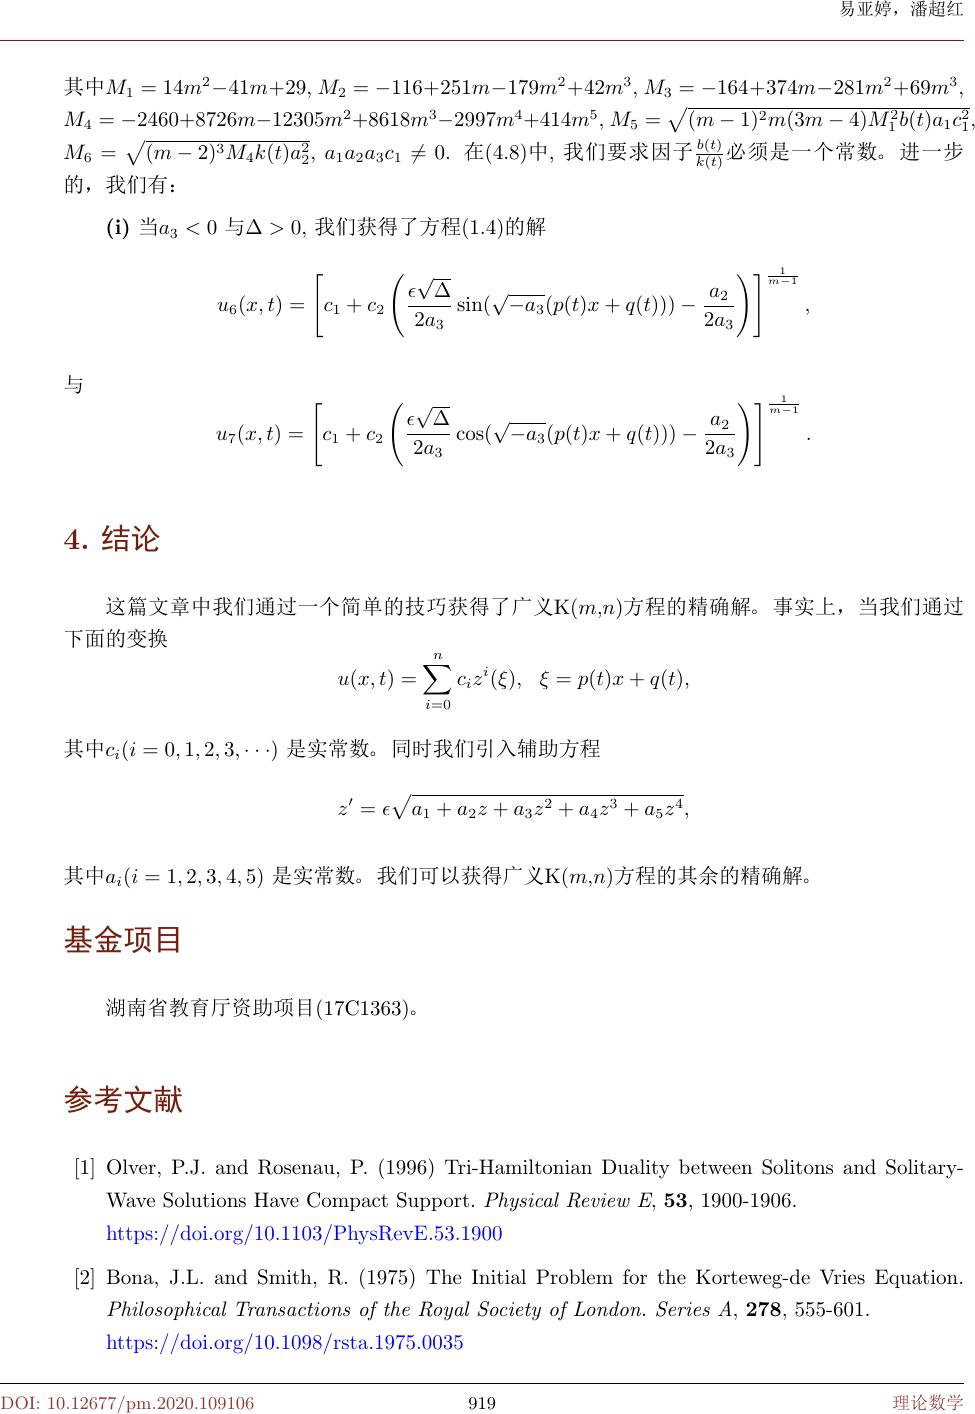 广义变系数k M N 方程的精确解 Exact Solutions For The Generalized K M N Equation With Variable Coefficients